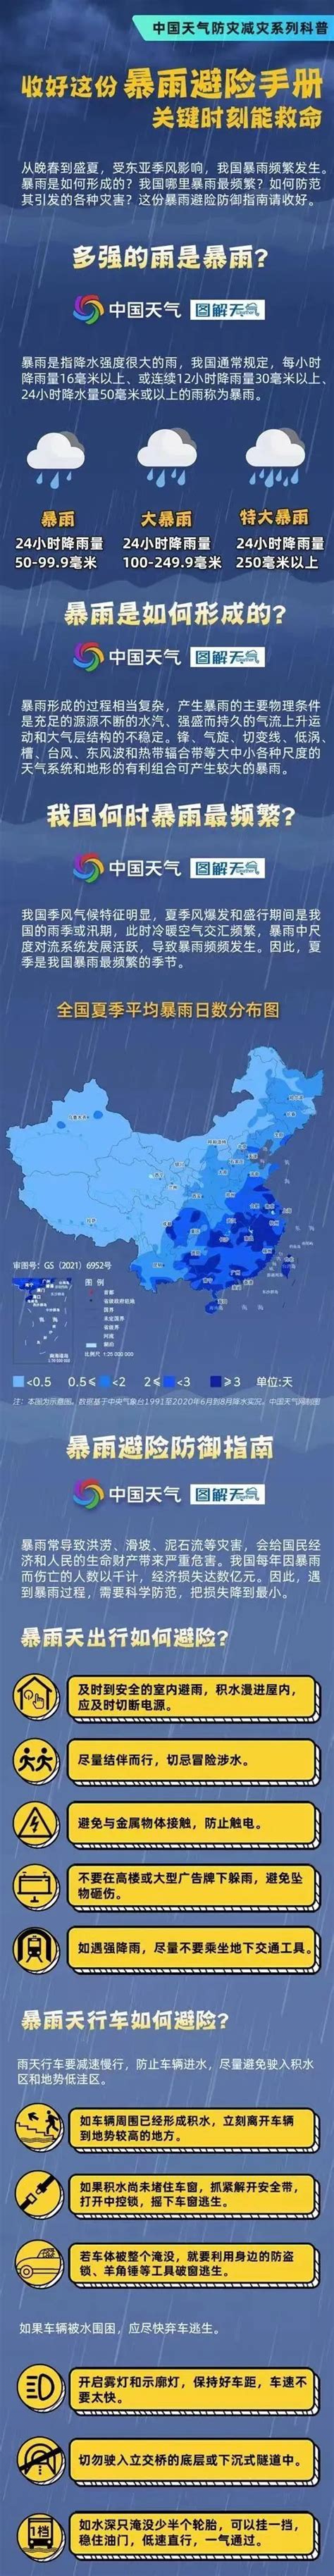 浙江连发147条预警：暴雨、雷电、大风、冰雹齐上阵-新闻频道-和讯网